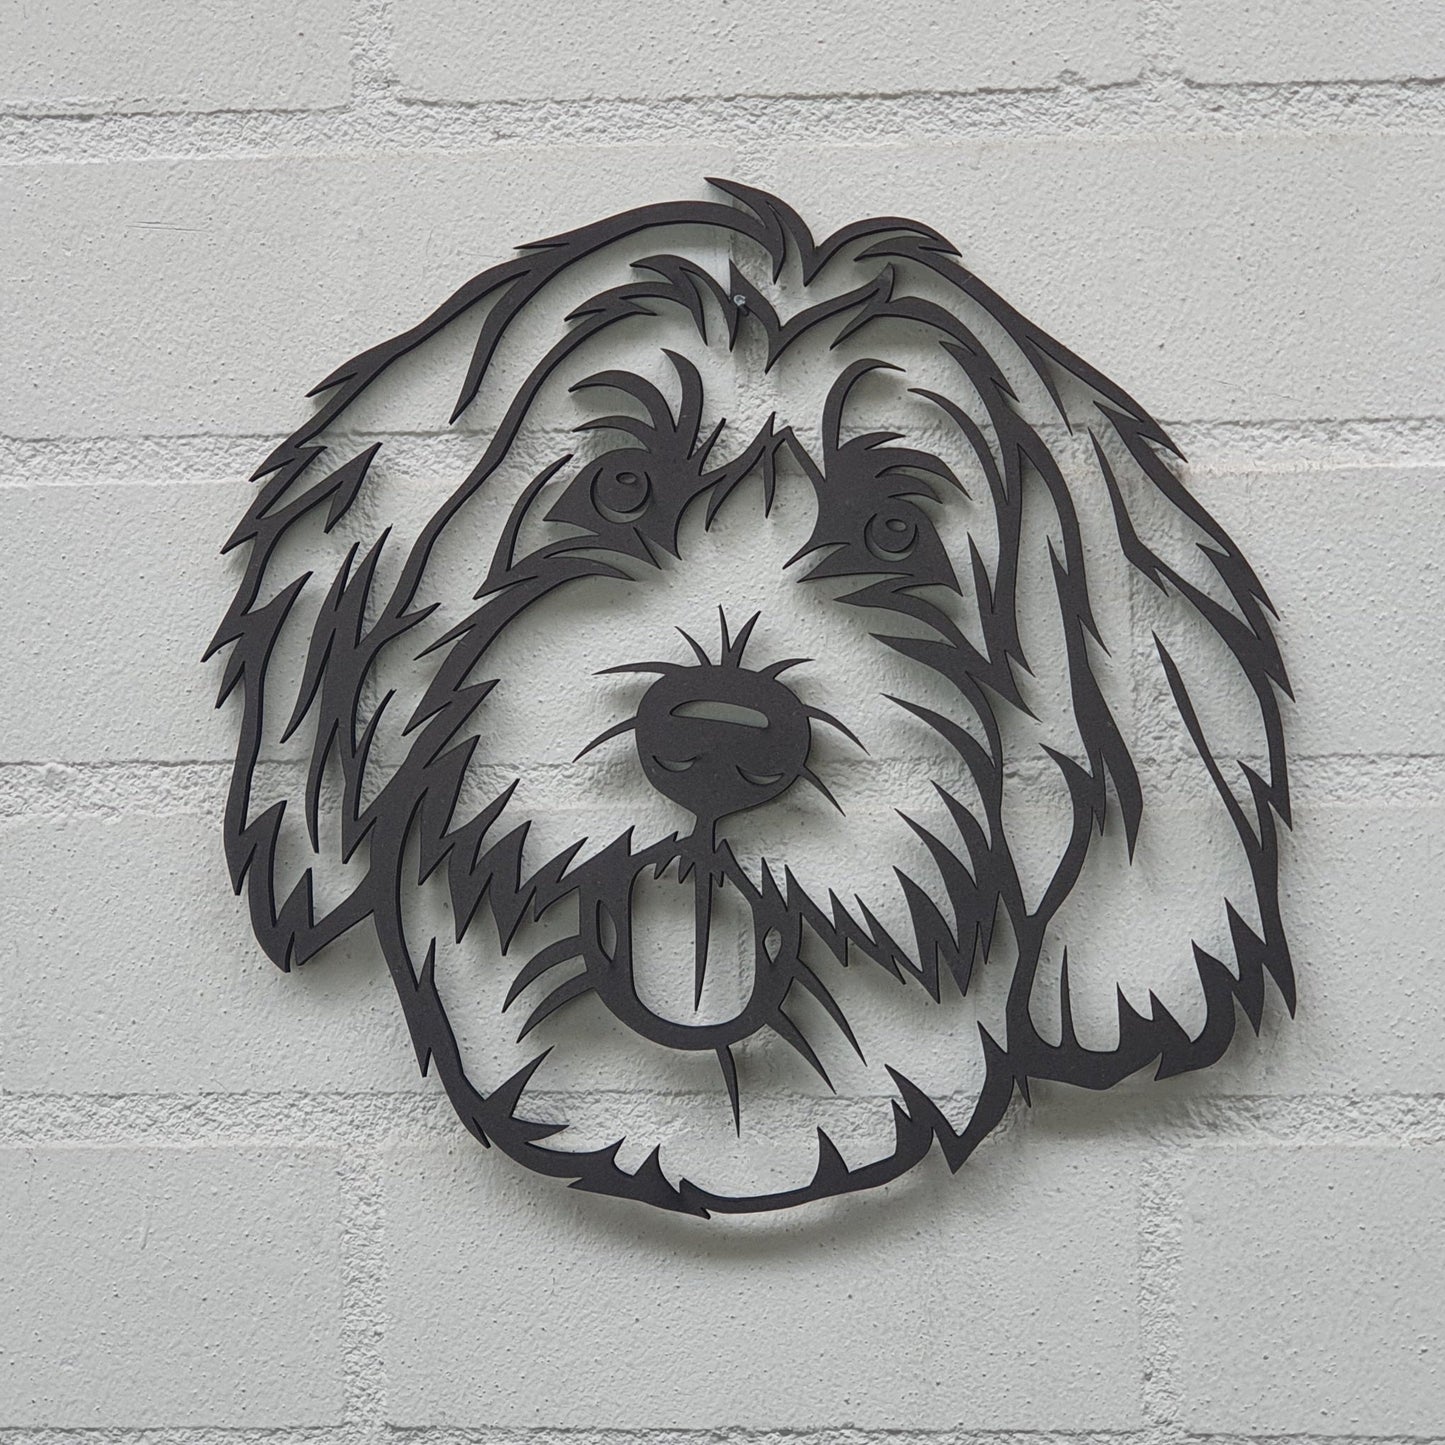 Een unieke wanddecoratie van je eigen huisdier!